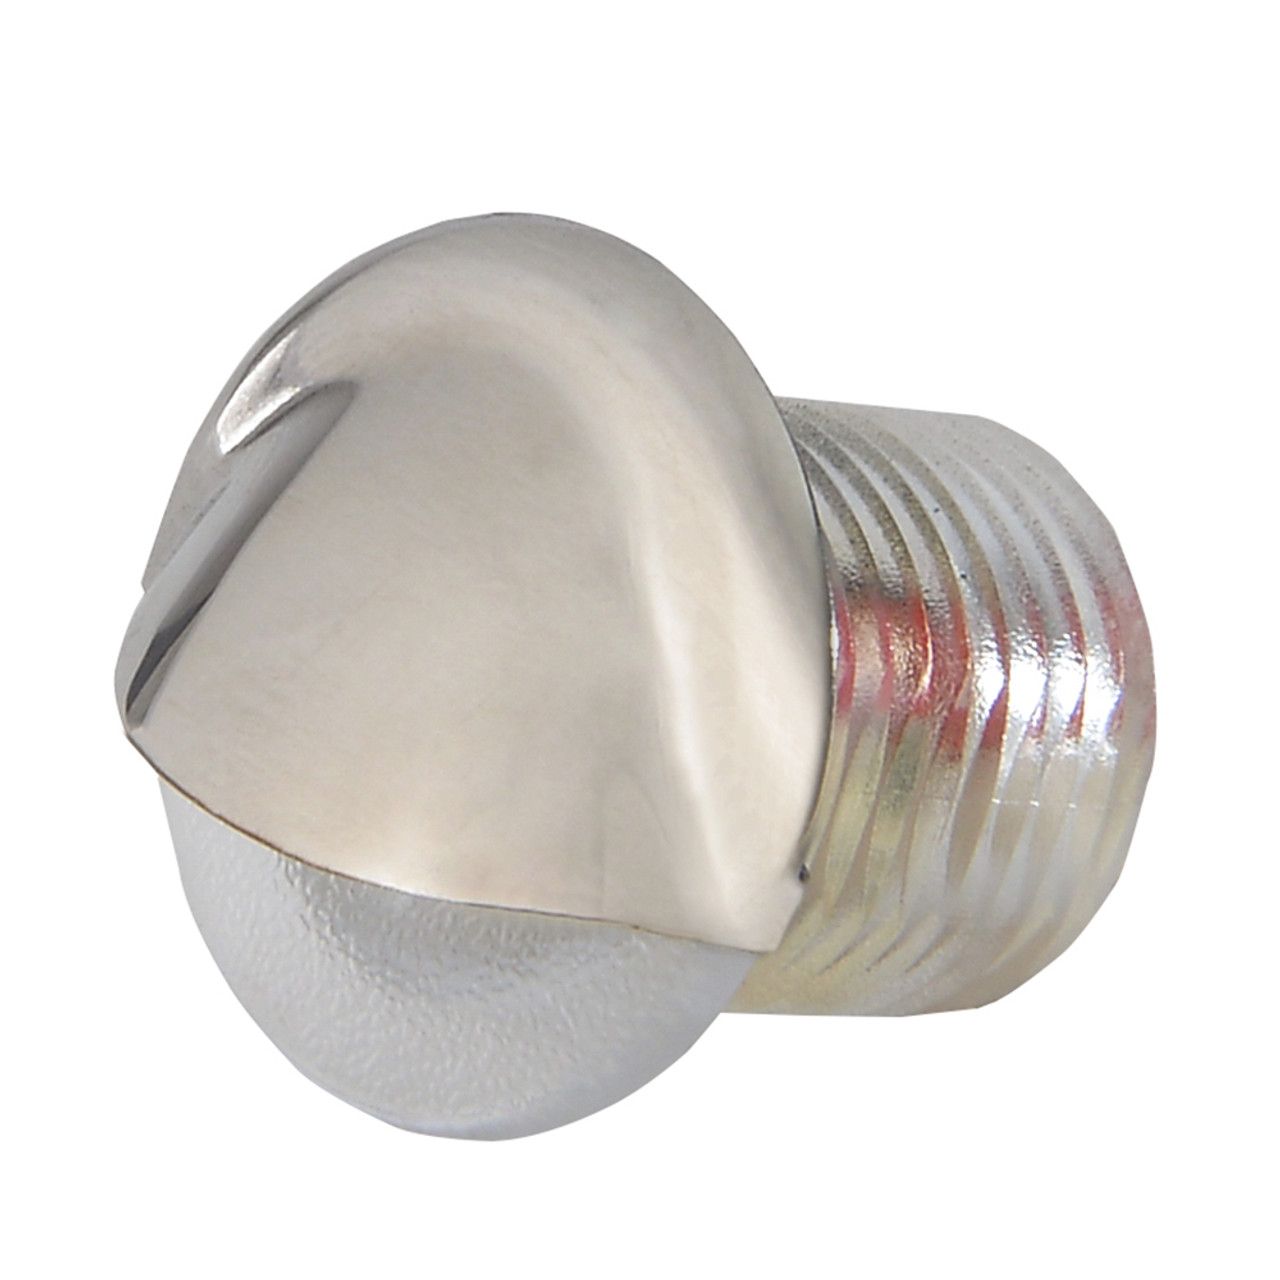 Lumitec - Aruba Baitwell LED Courtesy Light - Polished Stainless Steel Finish, IP67, 10-16V - Apollo Lighting